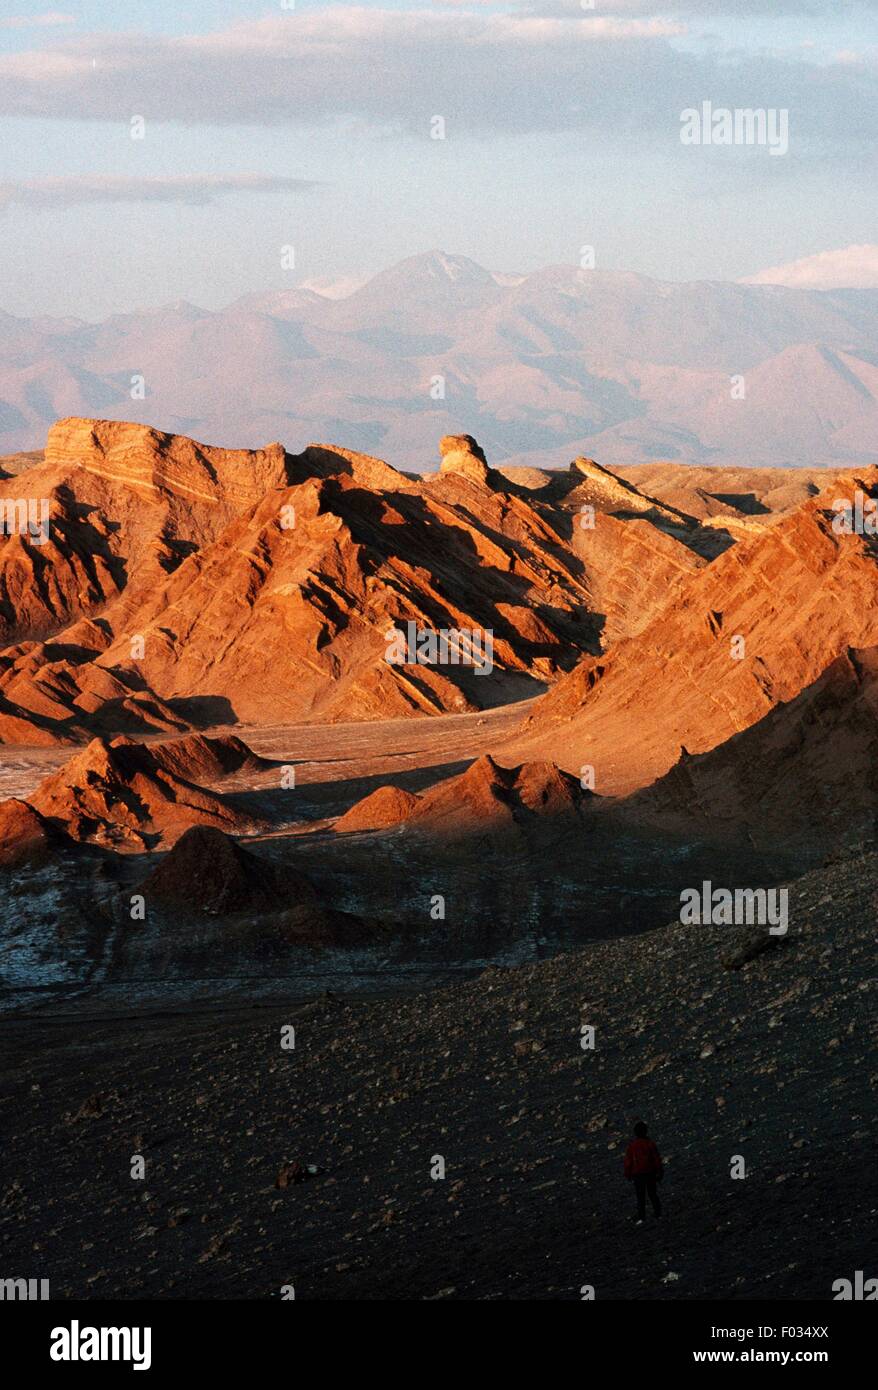 Vallée de la Lune, une dépression dans le désert entouré de collines avec des affleurements salins, Désert d'Atacama, au Chili. Banque D'Images